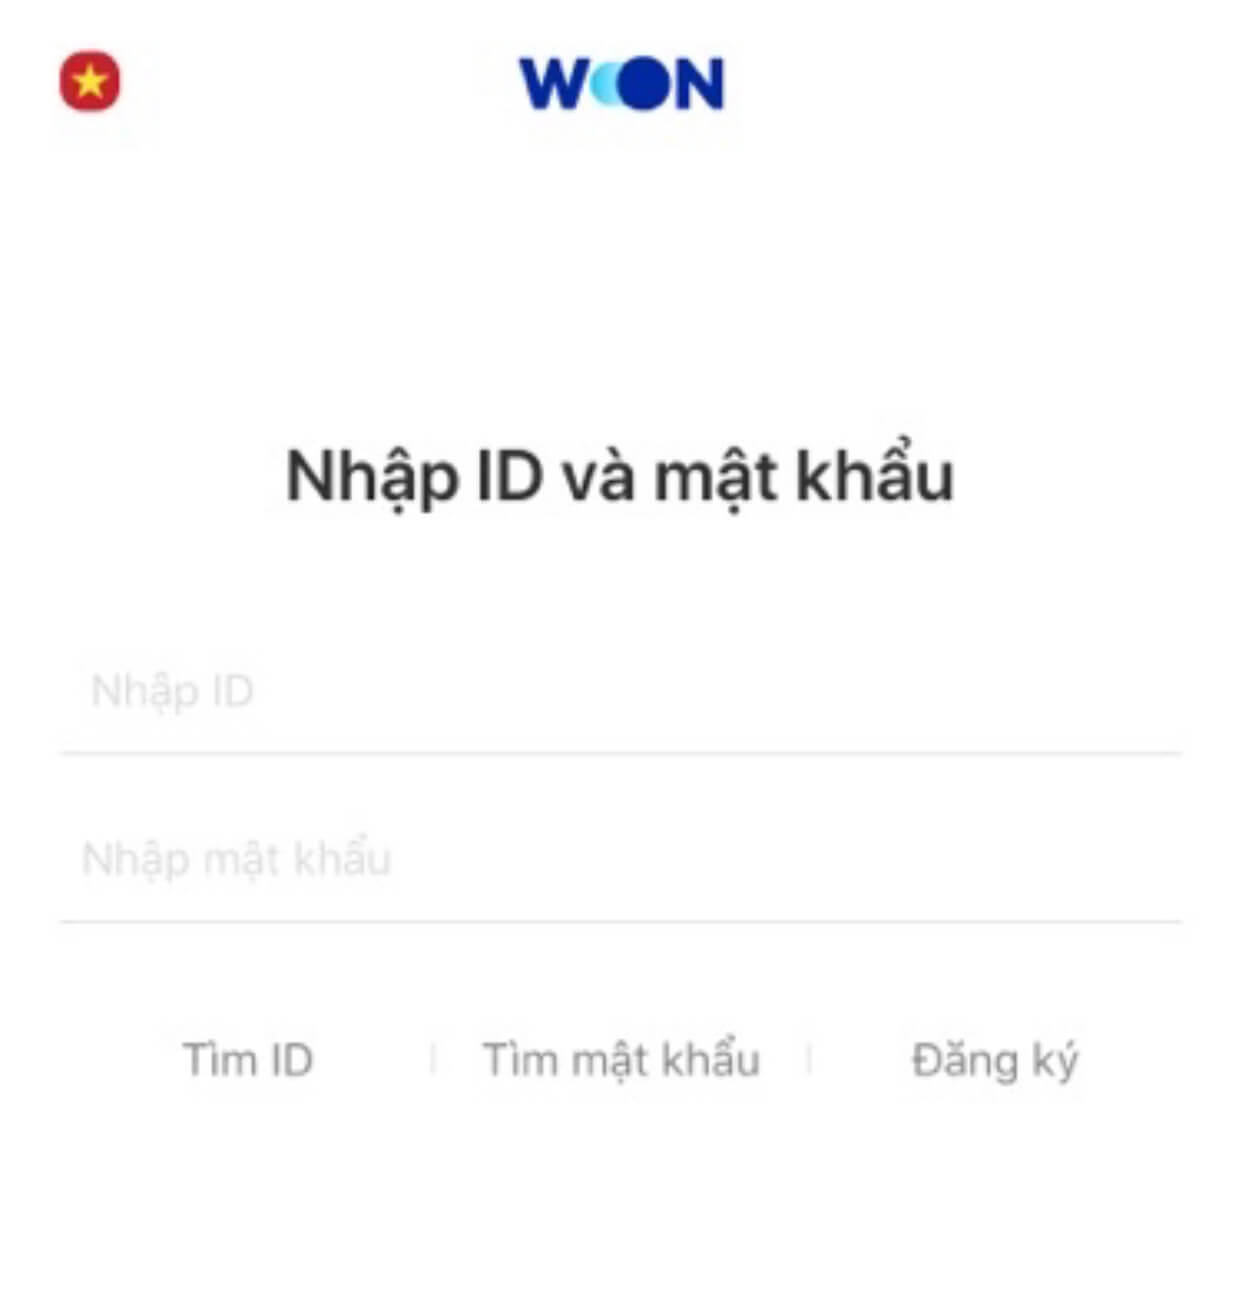 WON APP Wooribank Vietnam